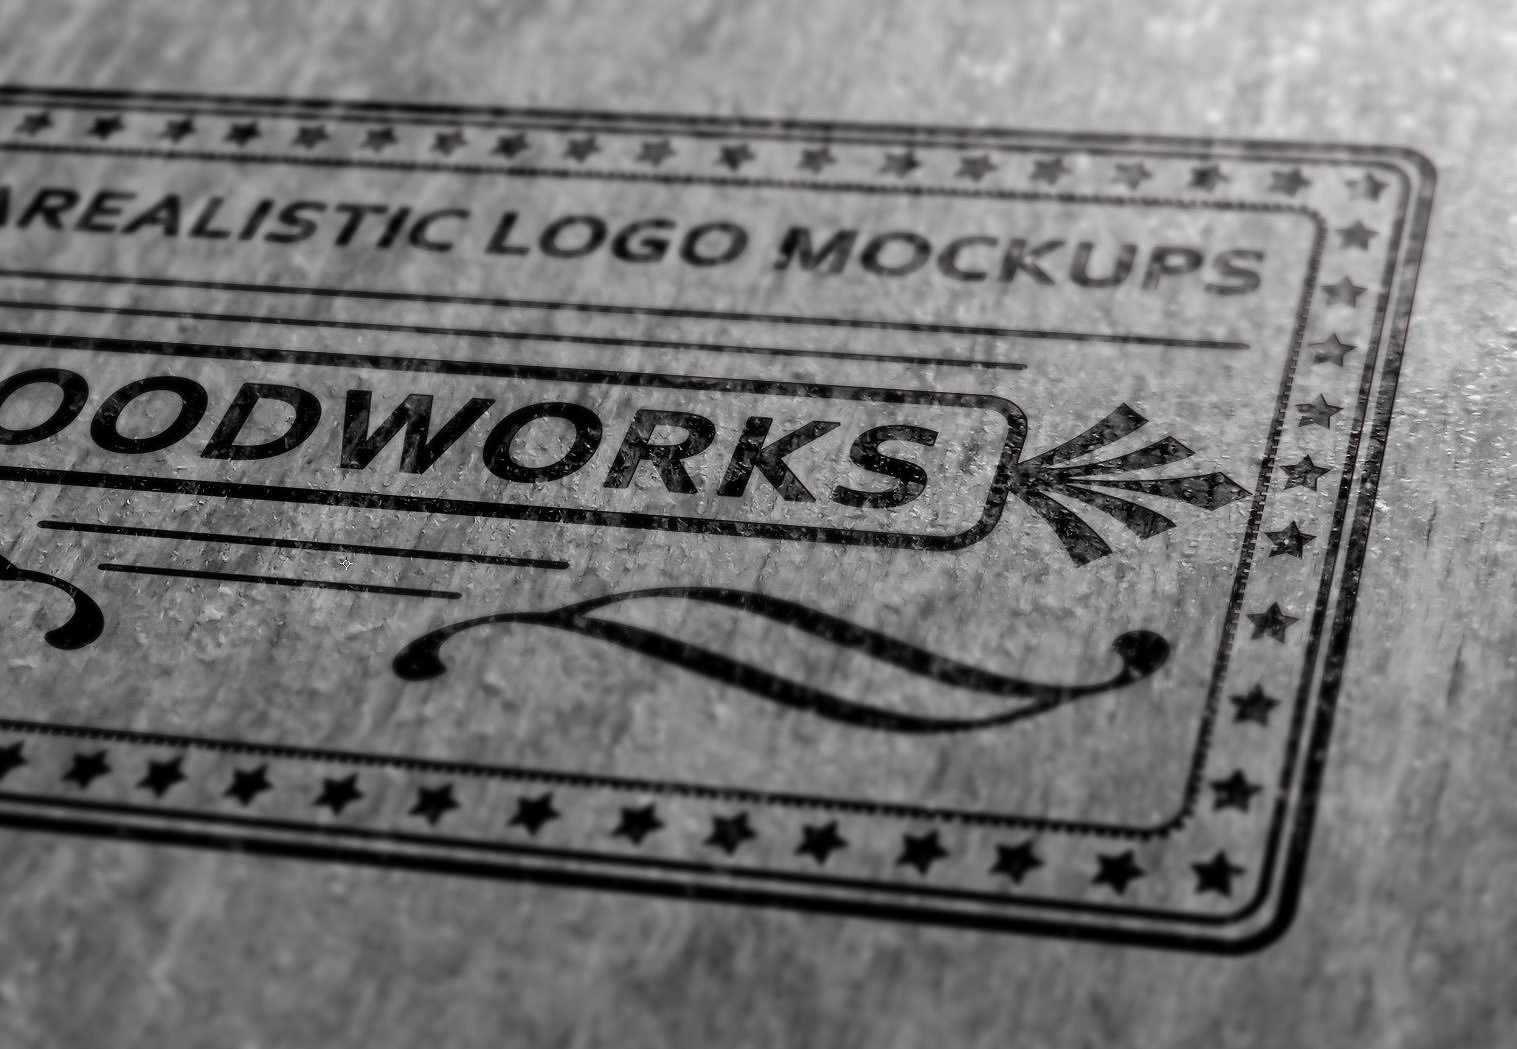 质感超级写实的经典品牌LOGO设计展示模型Mockups[PSD]插图(5)